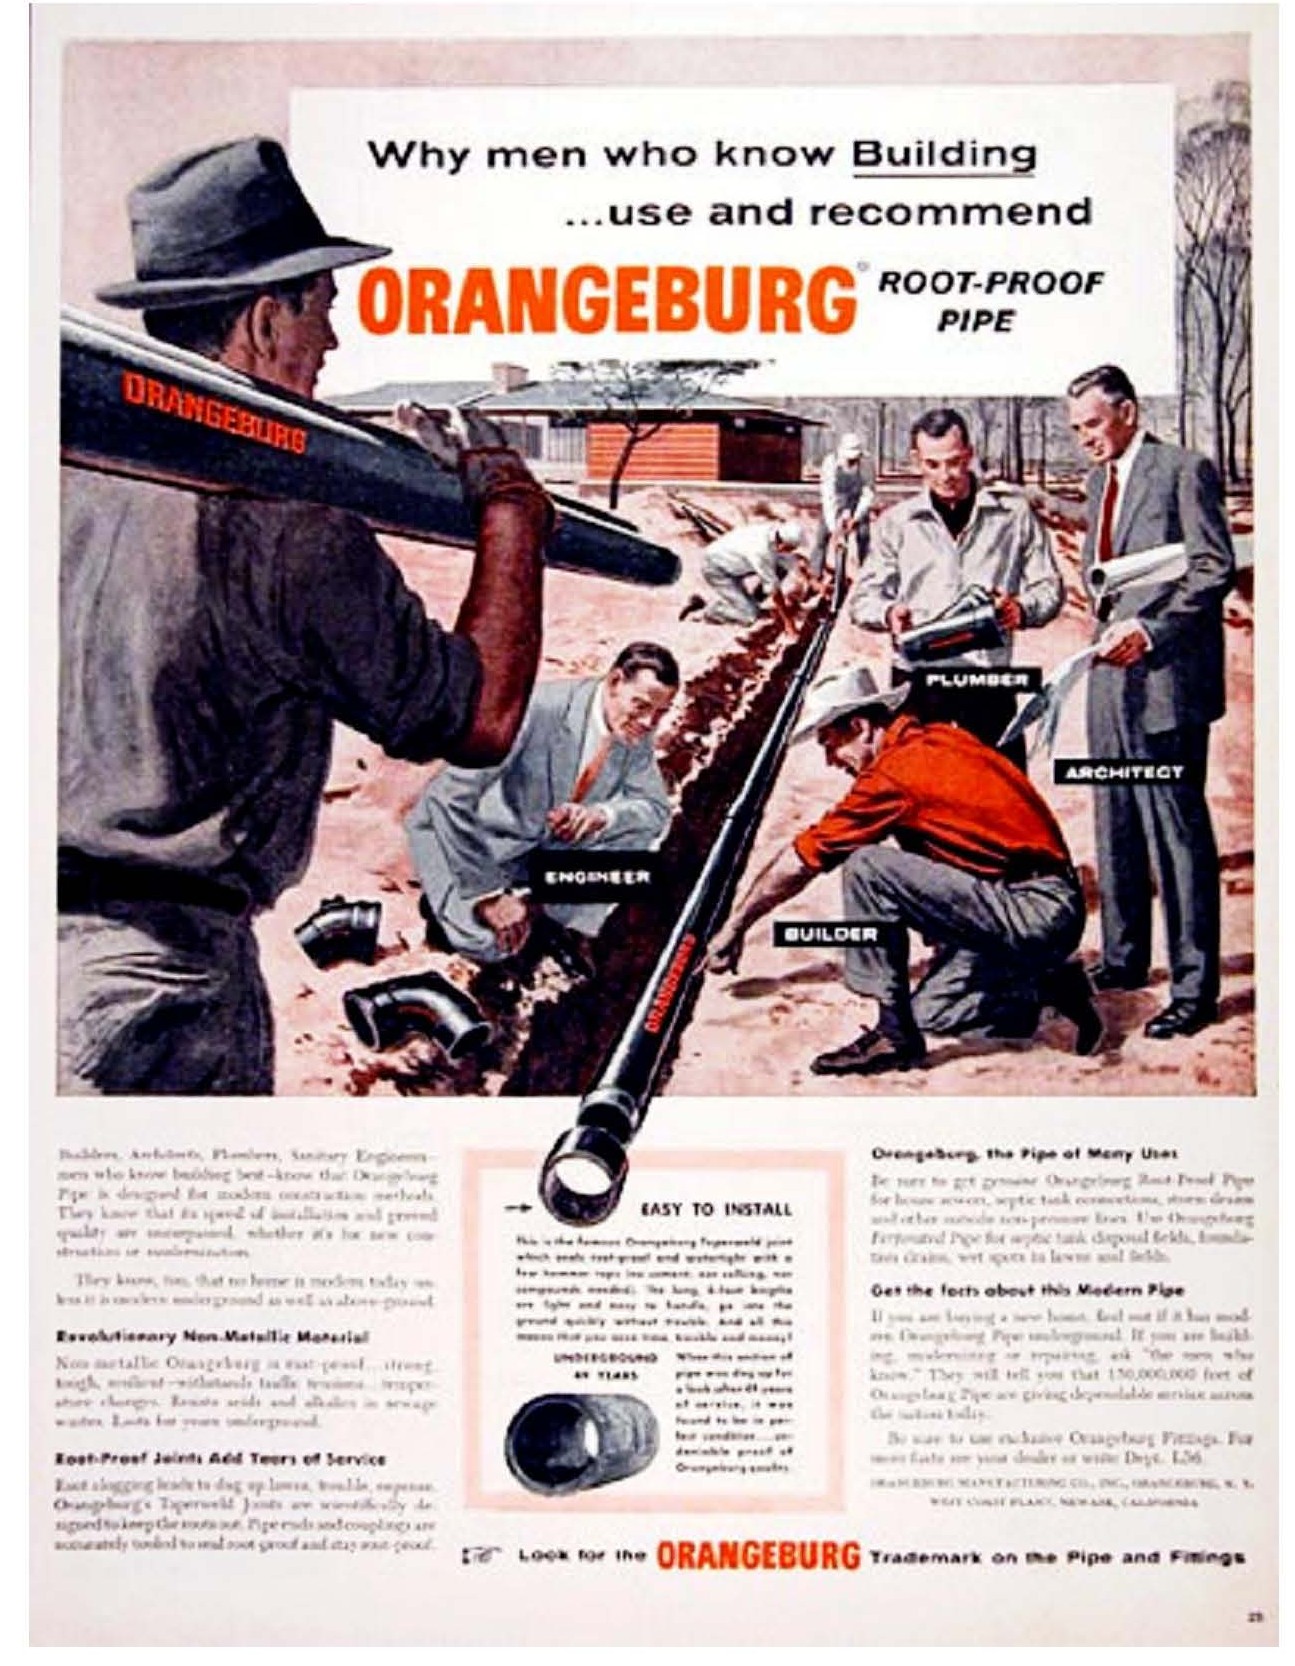 Orangeburg ad